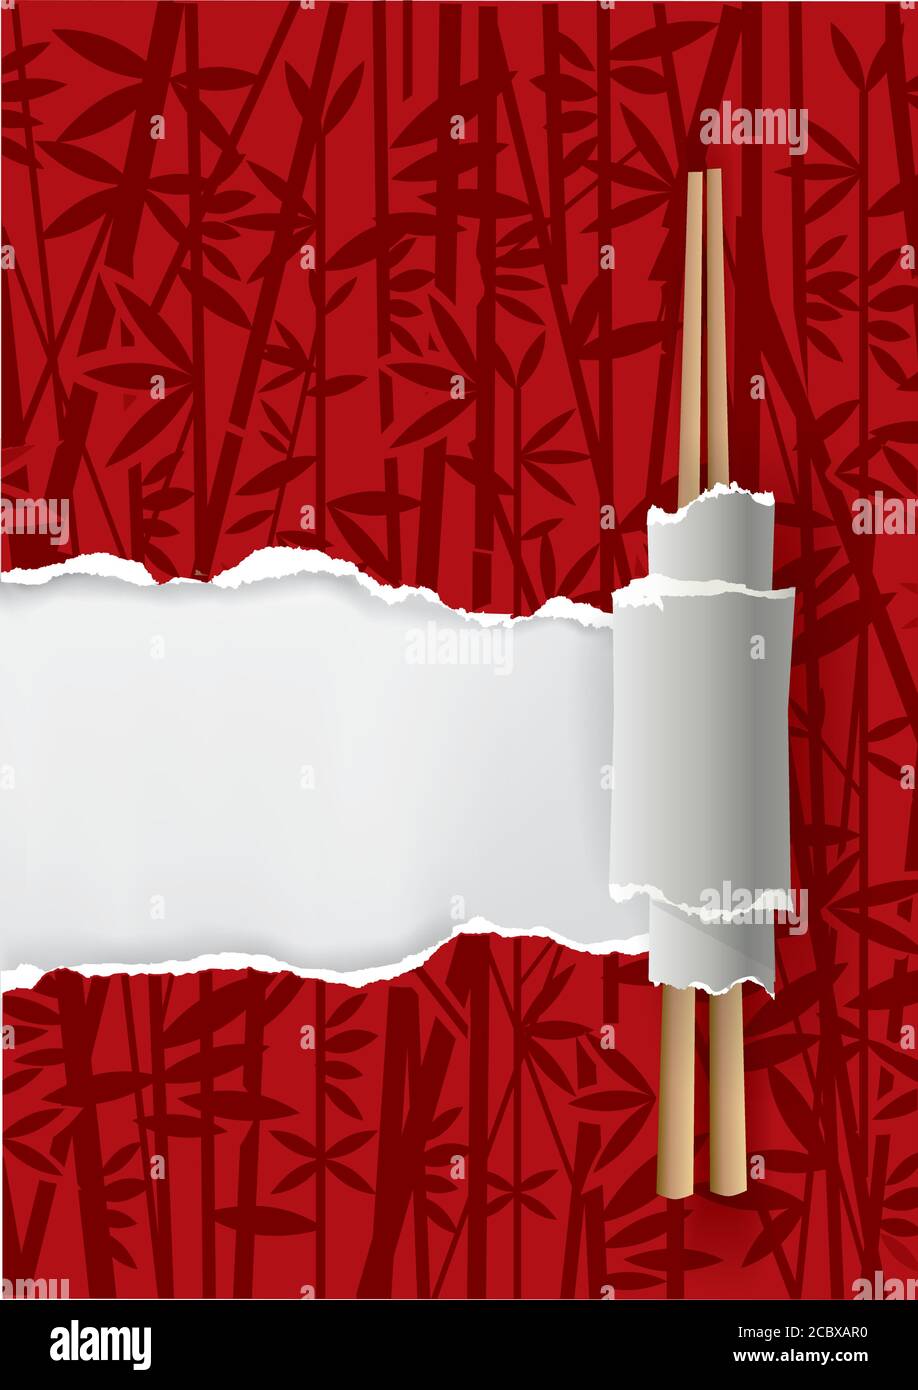 Arrière-plan du menu du restaurant China. Papier déchiré avec motif bambou et baguettes chinoises. Place pour votre texte ou image. Vecteur disponible. Illustration de Vecteur